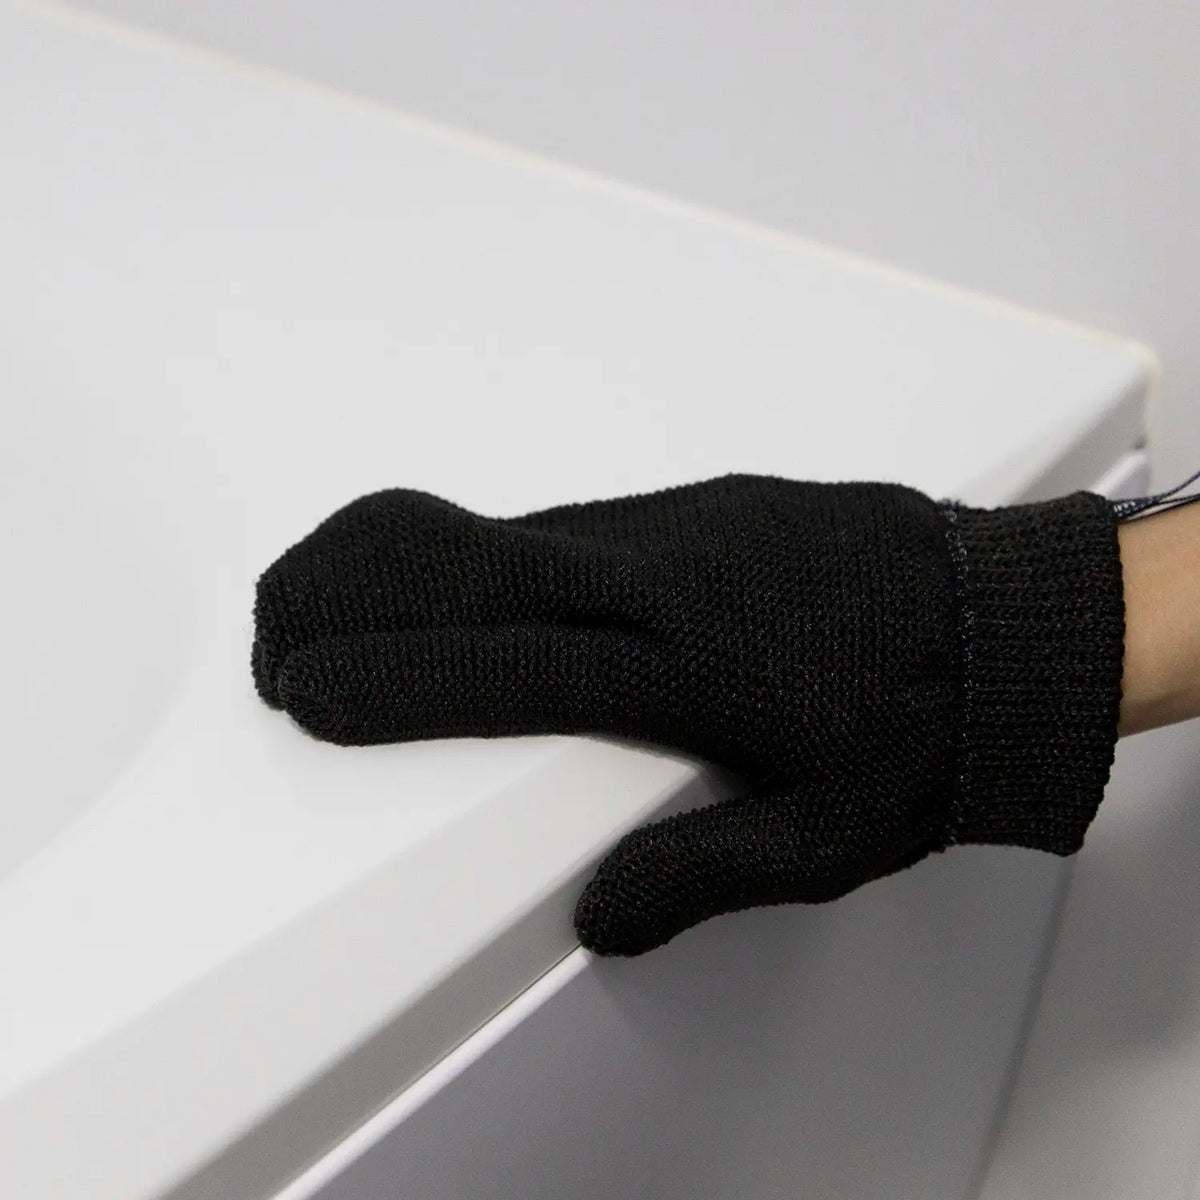 SANBELM Polyester Scrubbing Glove (One Hand)